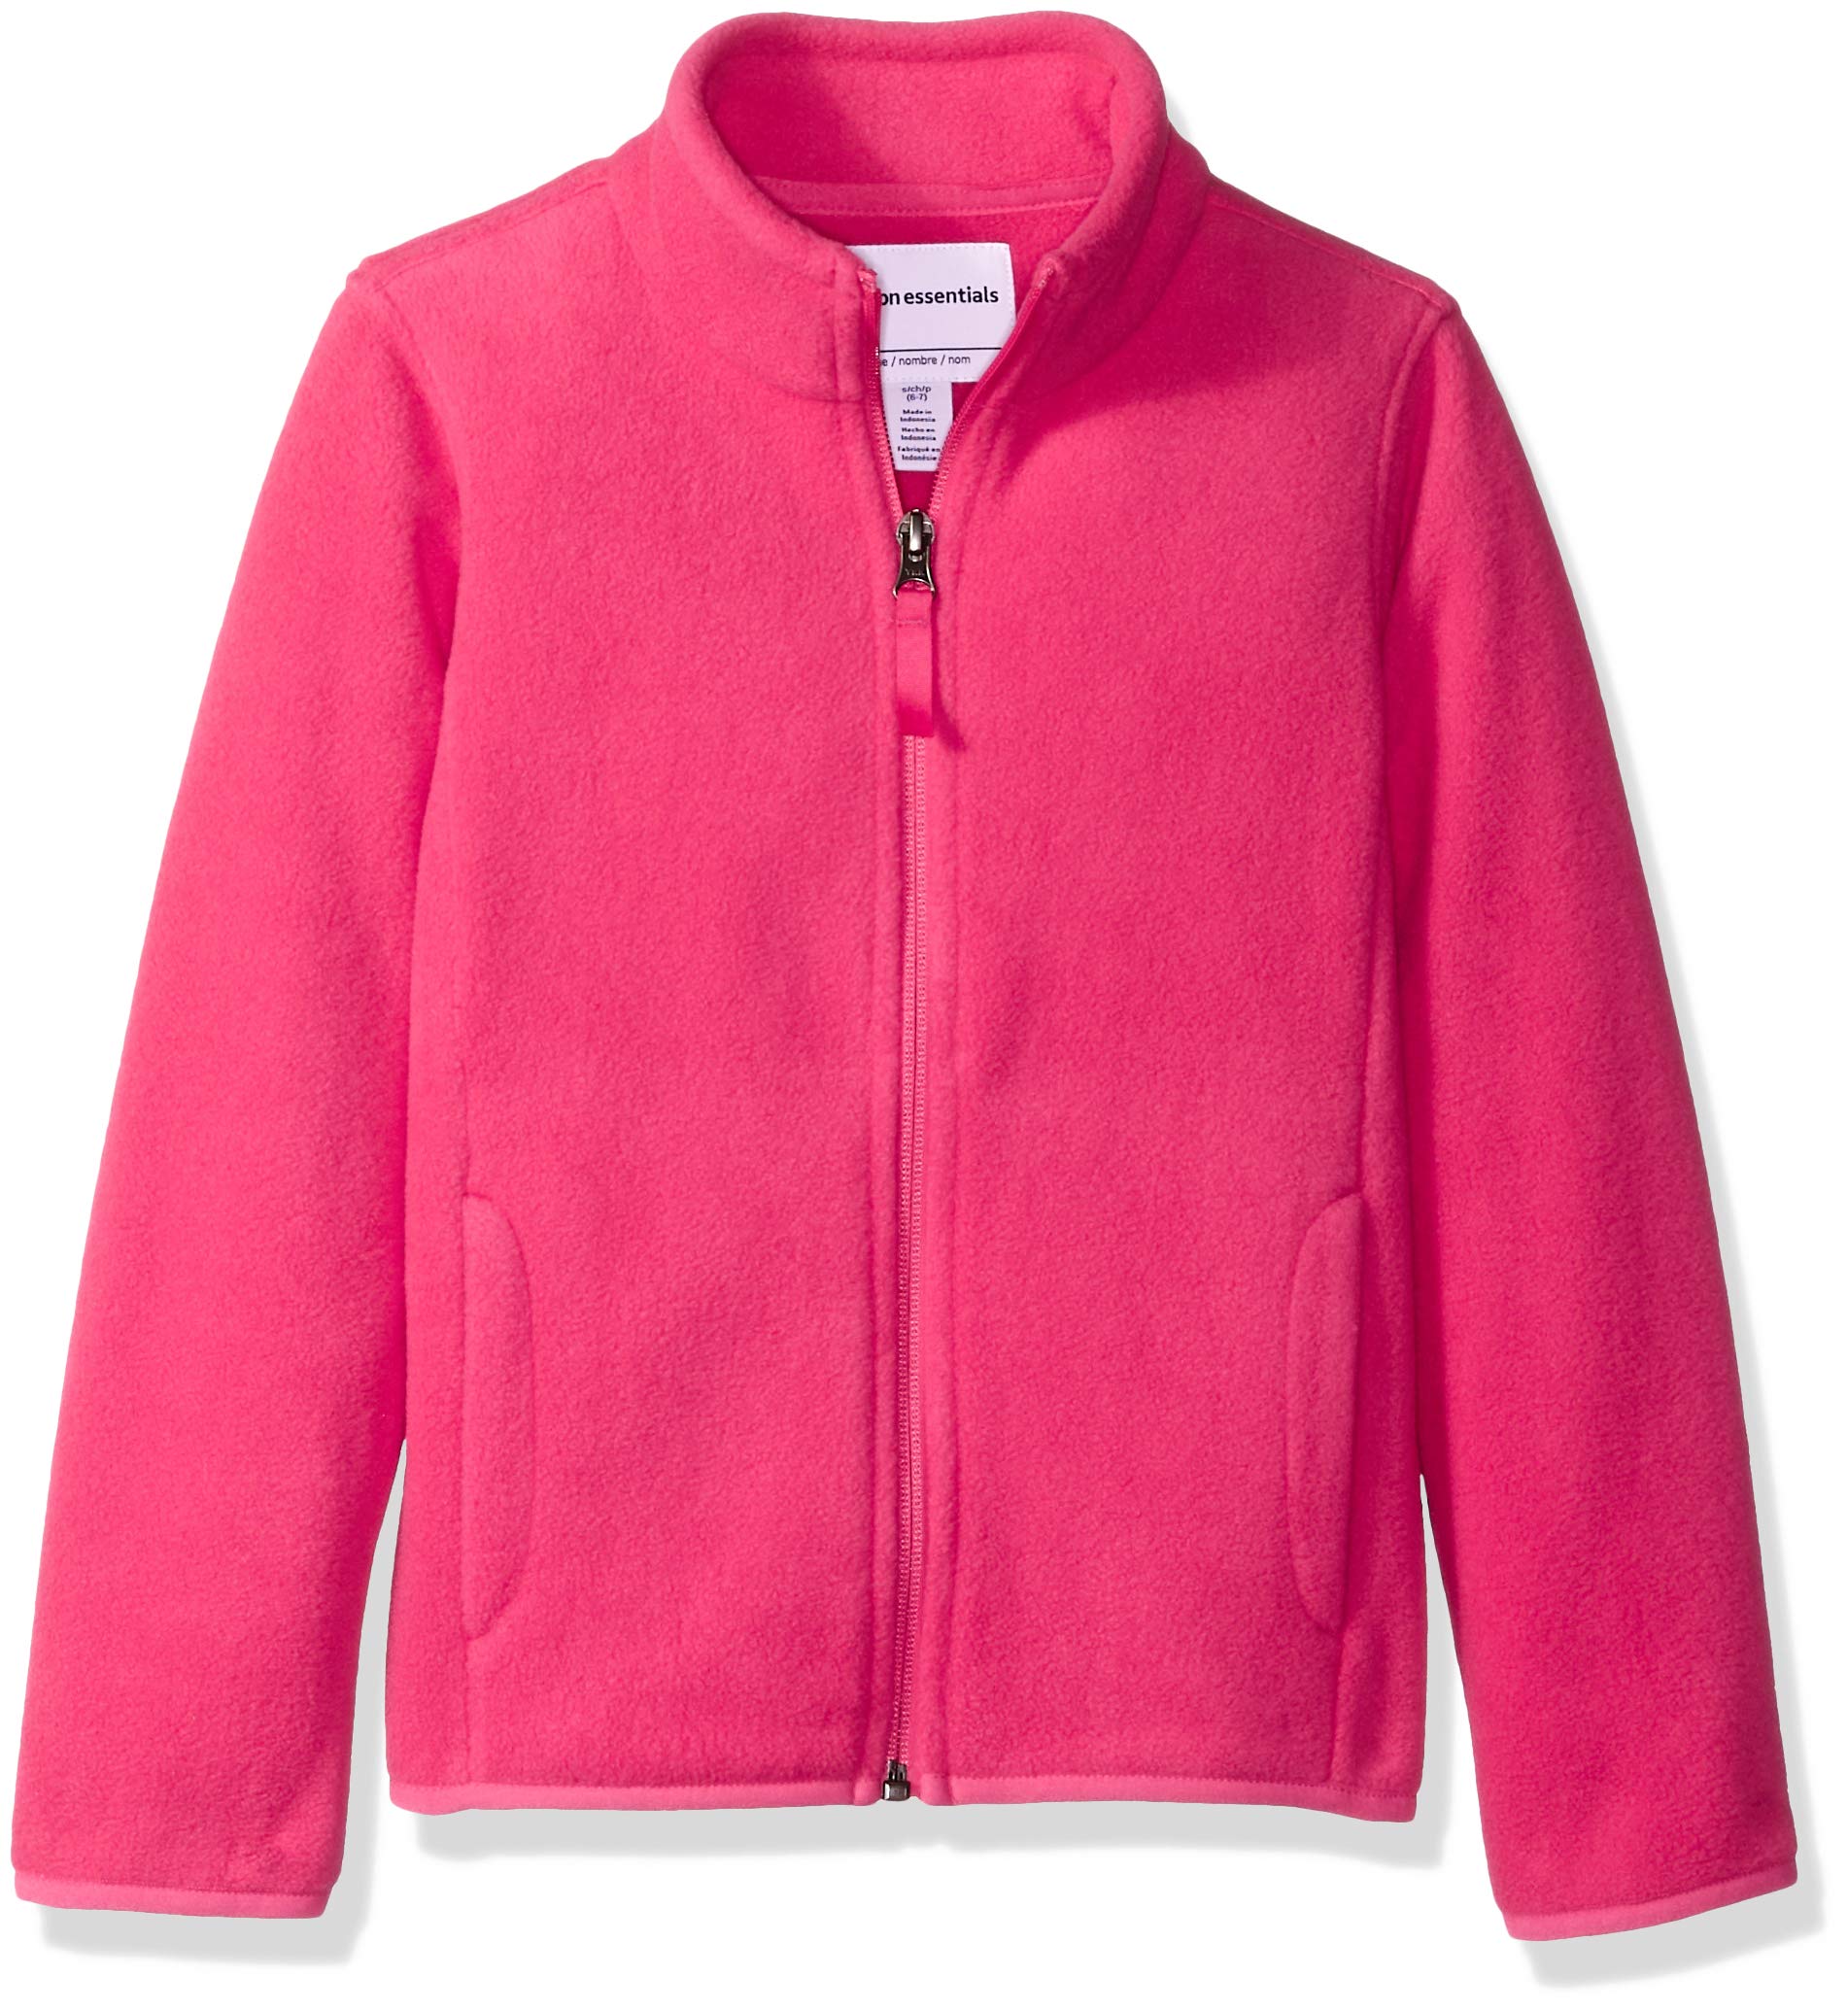 Essentials Girls Polar Fleece Full-Zip Mock Jackets